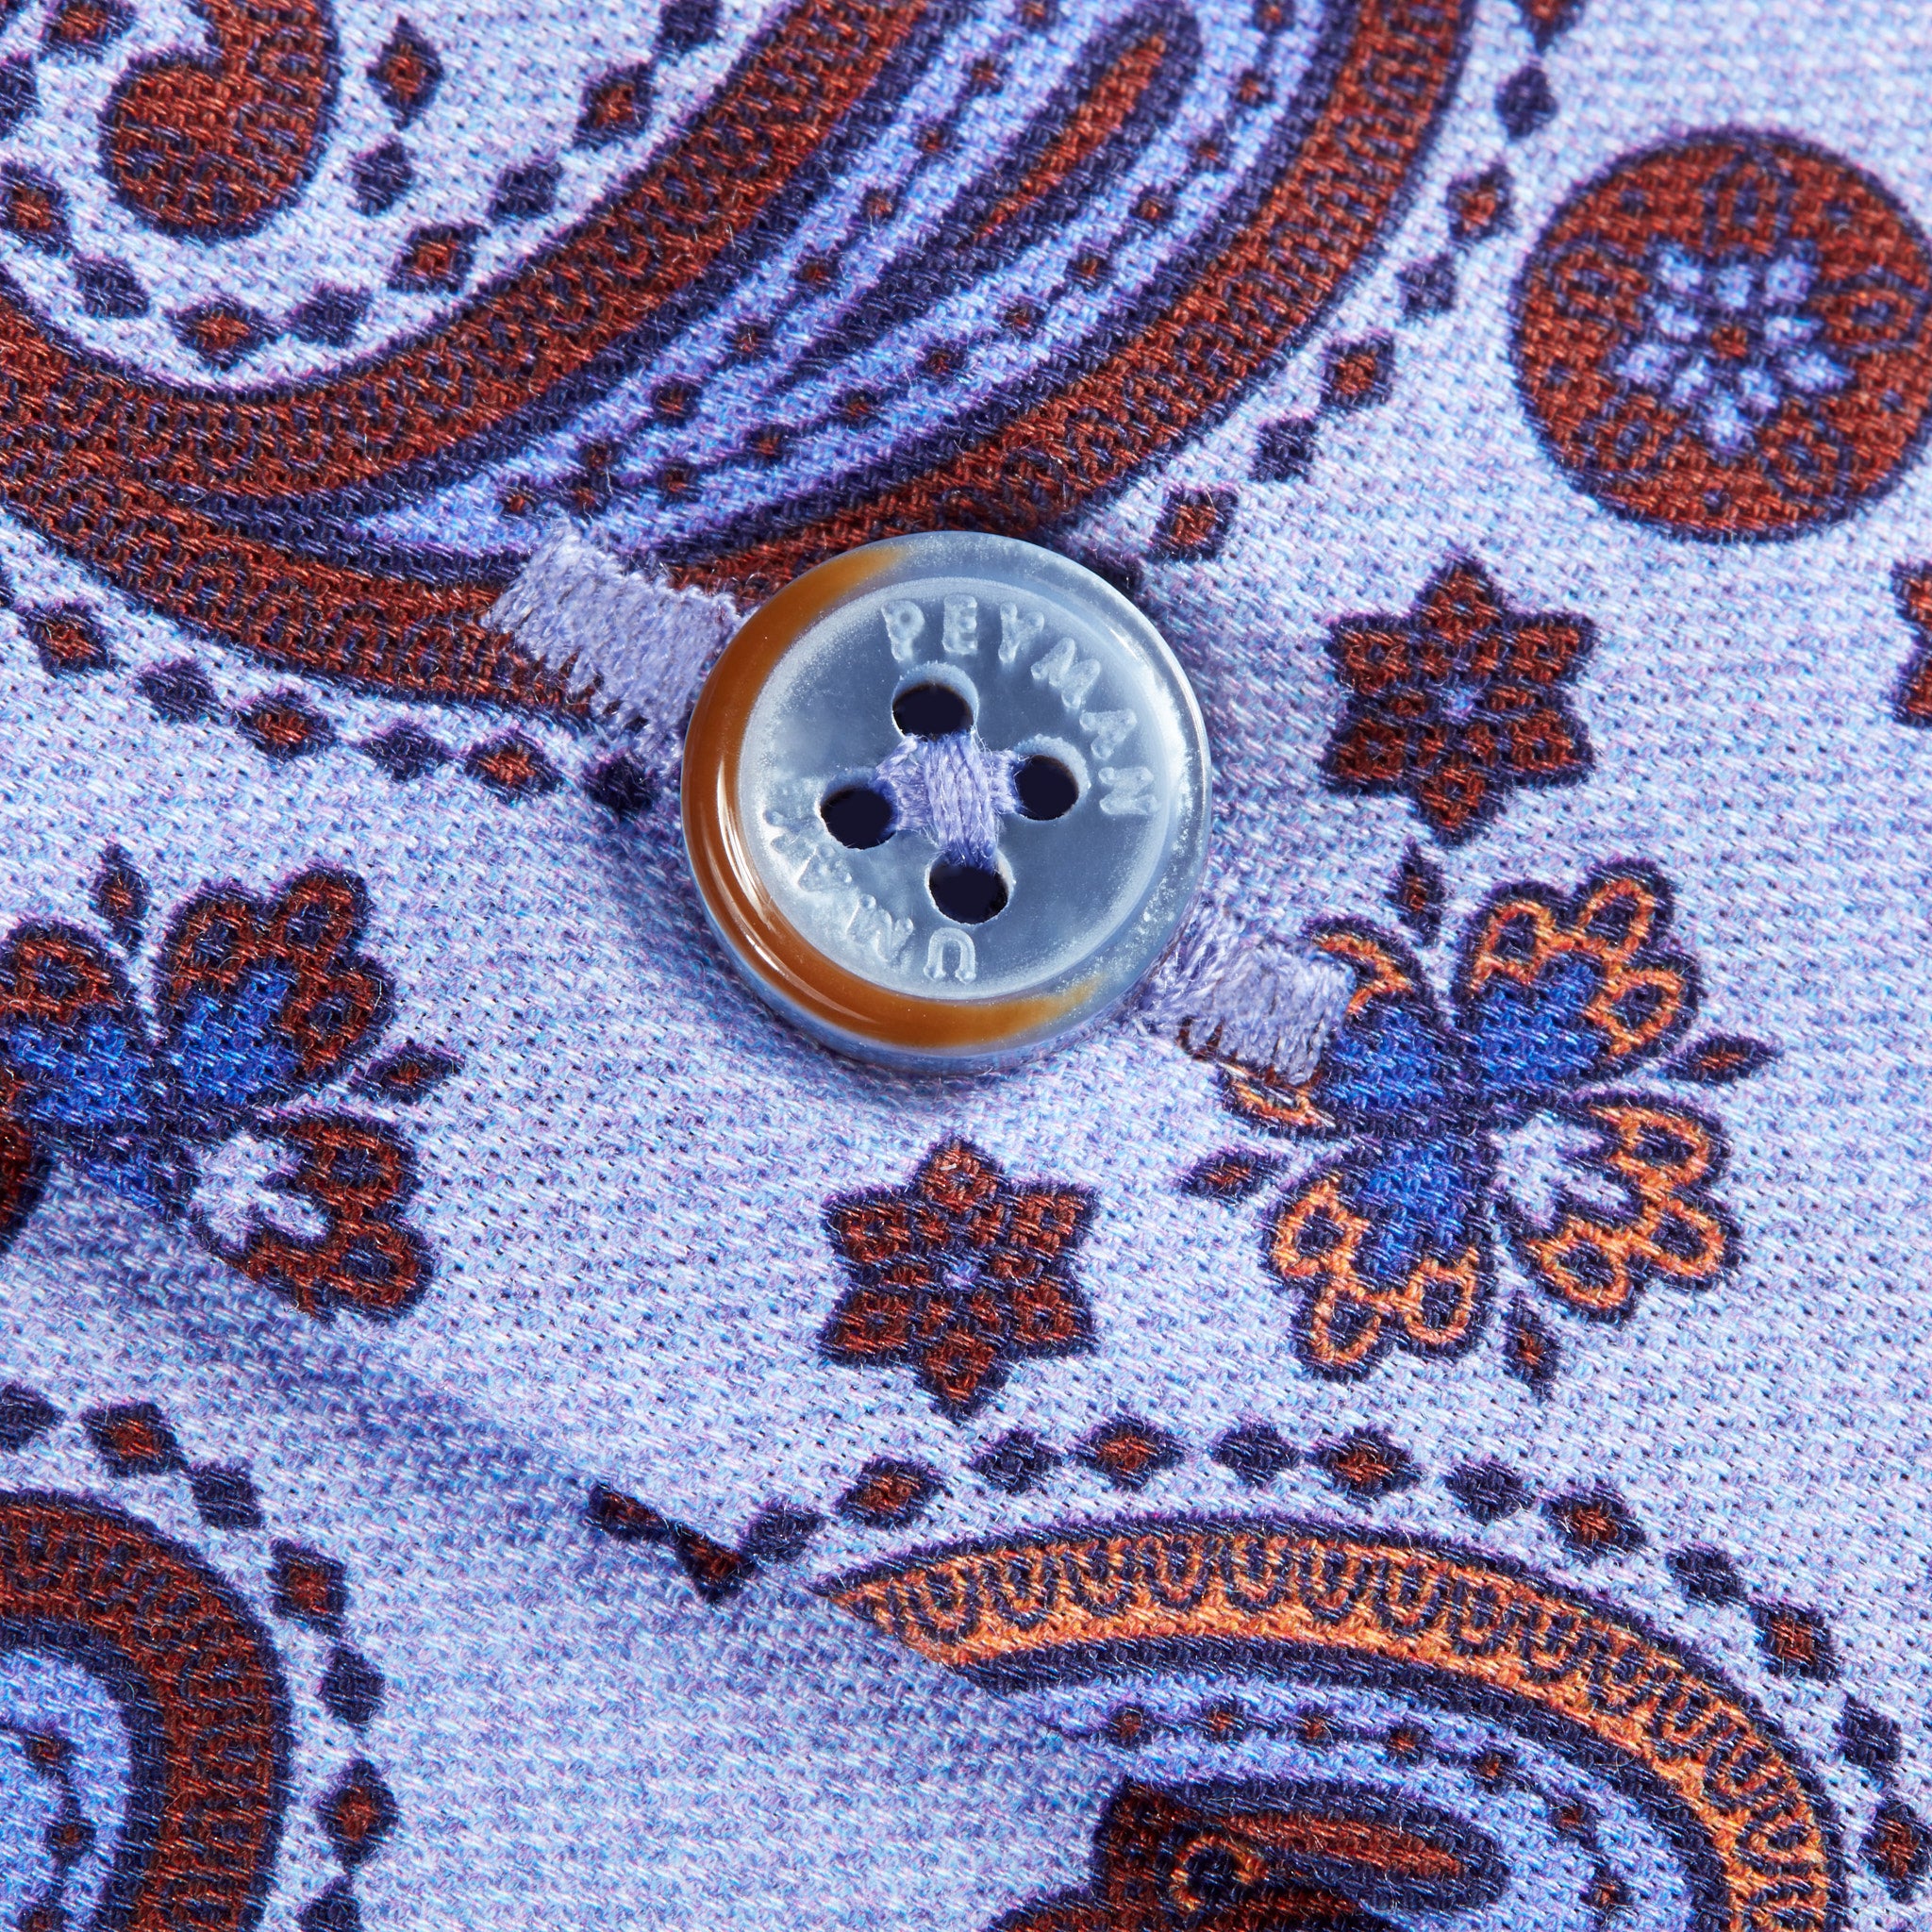 Lilac Paisley Cotton Men's Shirt – Peyman Umay